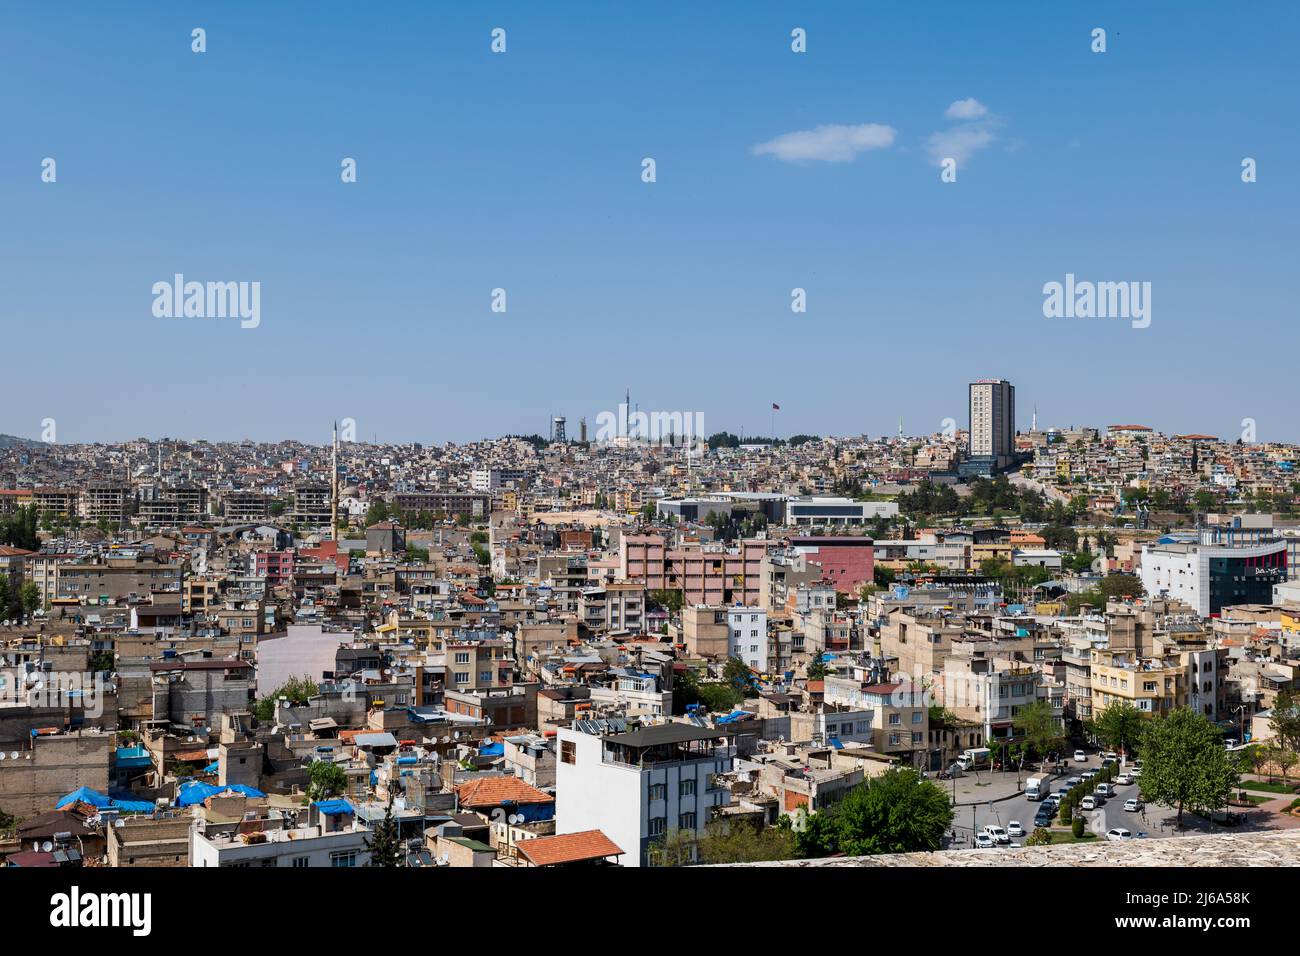 Vue sur la ville de Gaziantep, paysage urbain de Gaziantep en Turquie. Gaziantep est la sixième ville la plus peuplée de Turquie. Banque D'Images